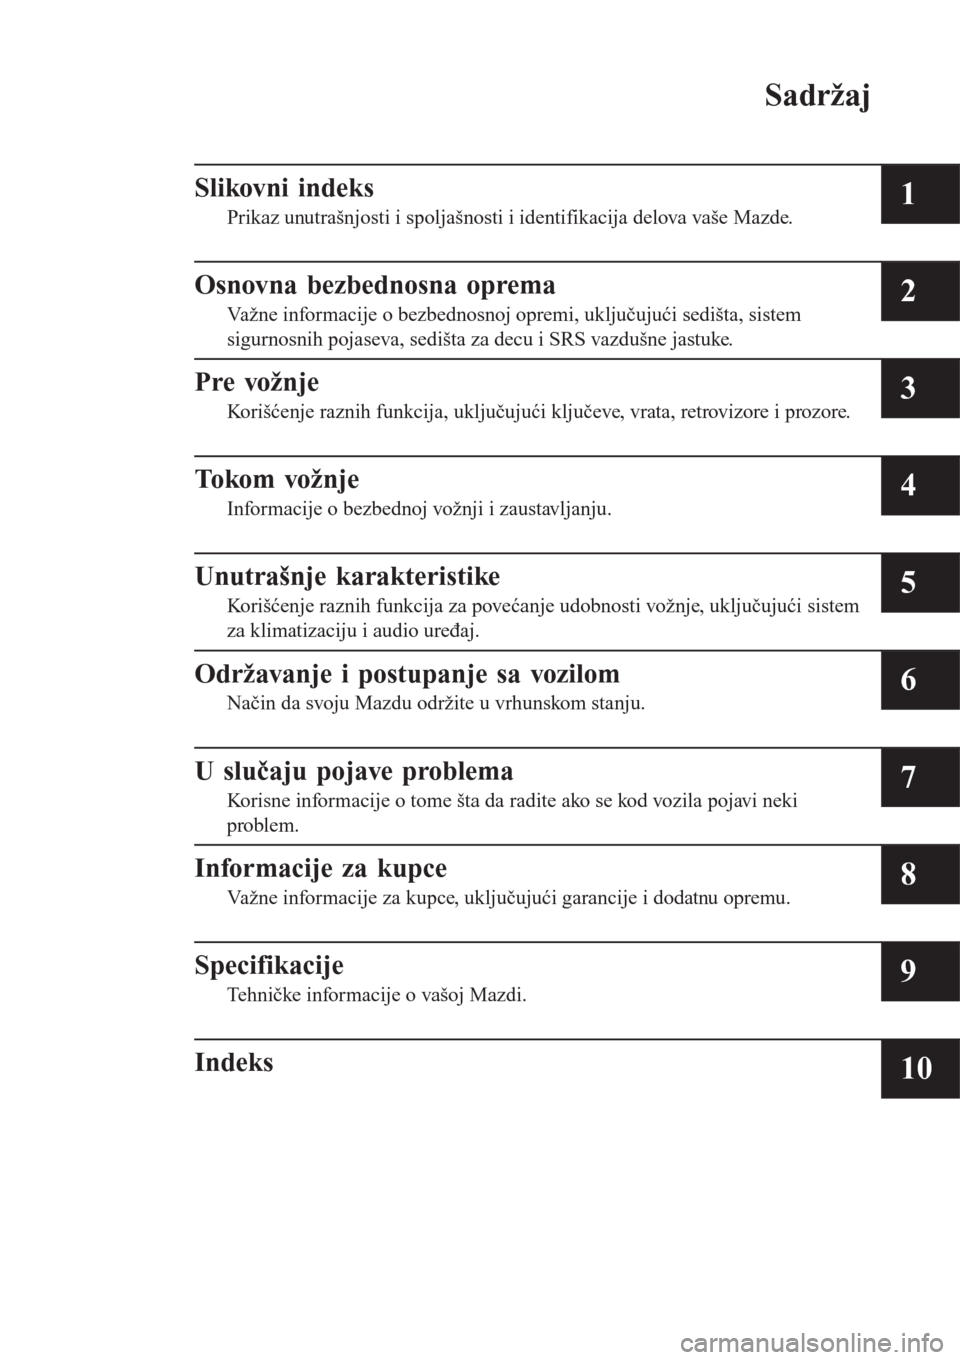 MAZDA MODEL CX-3 2016  Korisničko uputstvo (in Serbian) Sadržaj
Slikovni indeks
Prikaz unutrašnjosti i spoljašnosti i identifikacija delova vaše Mazde.1
Osnovna bezbednosna oprema
Važne informacije o bezbednosnoj opremi, uključujući sedišta, sistem